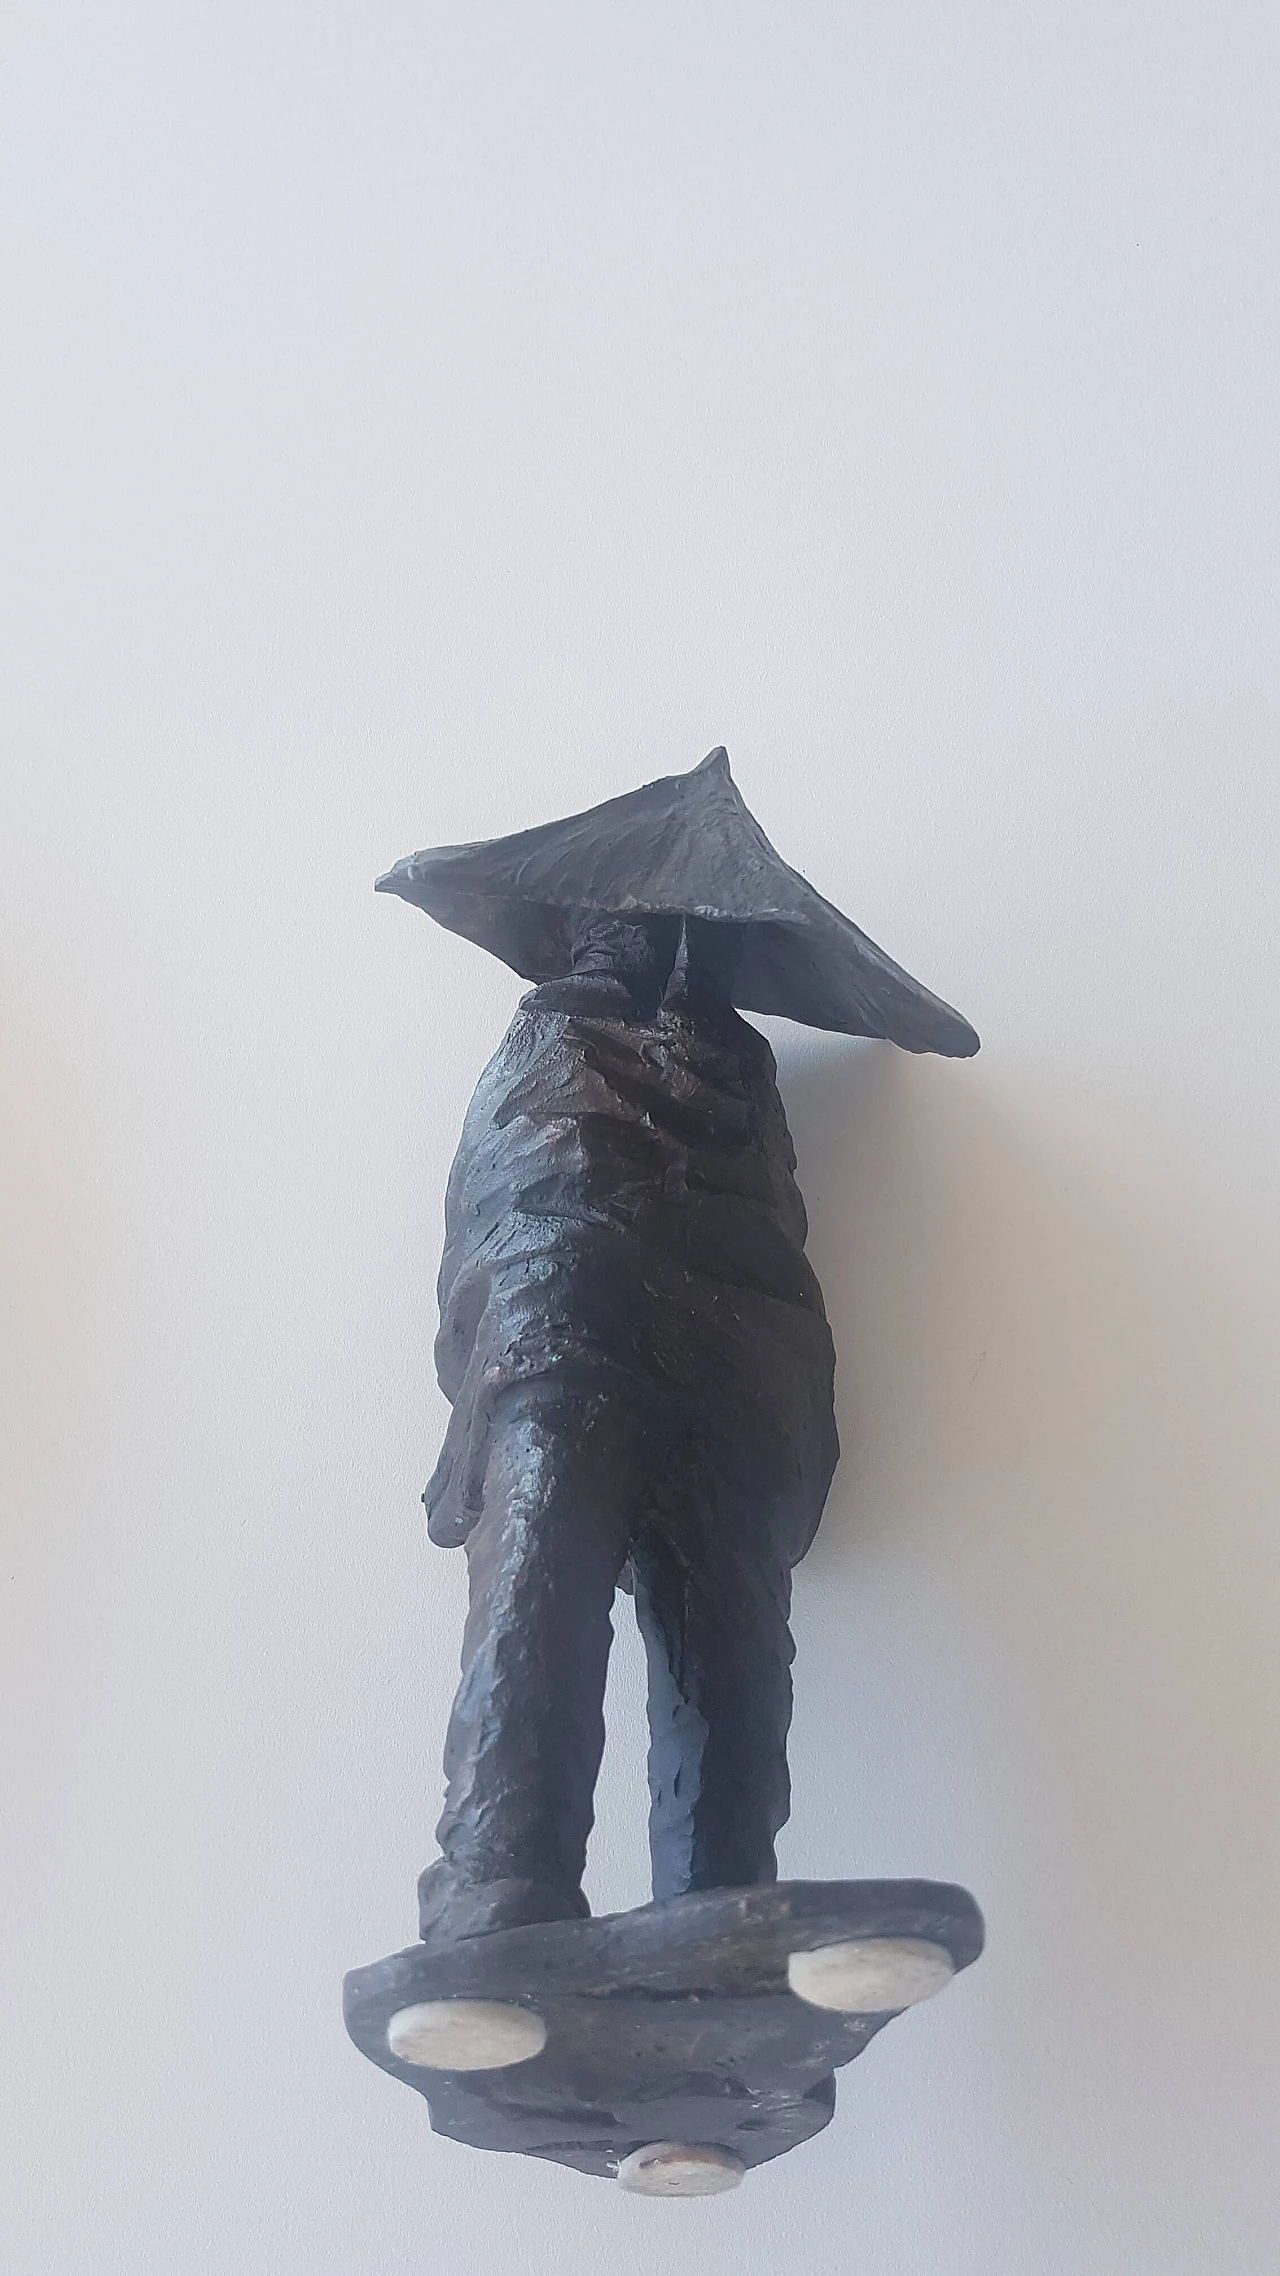 Small sculpture by Carlo Balljana, "Controvento", 1973 1067244